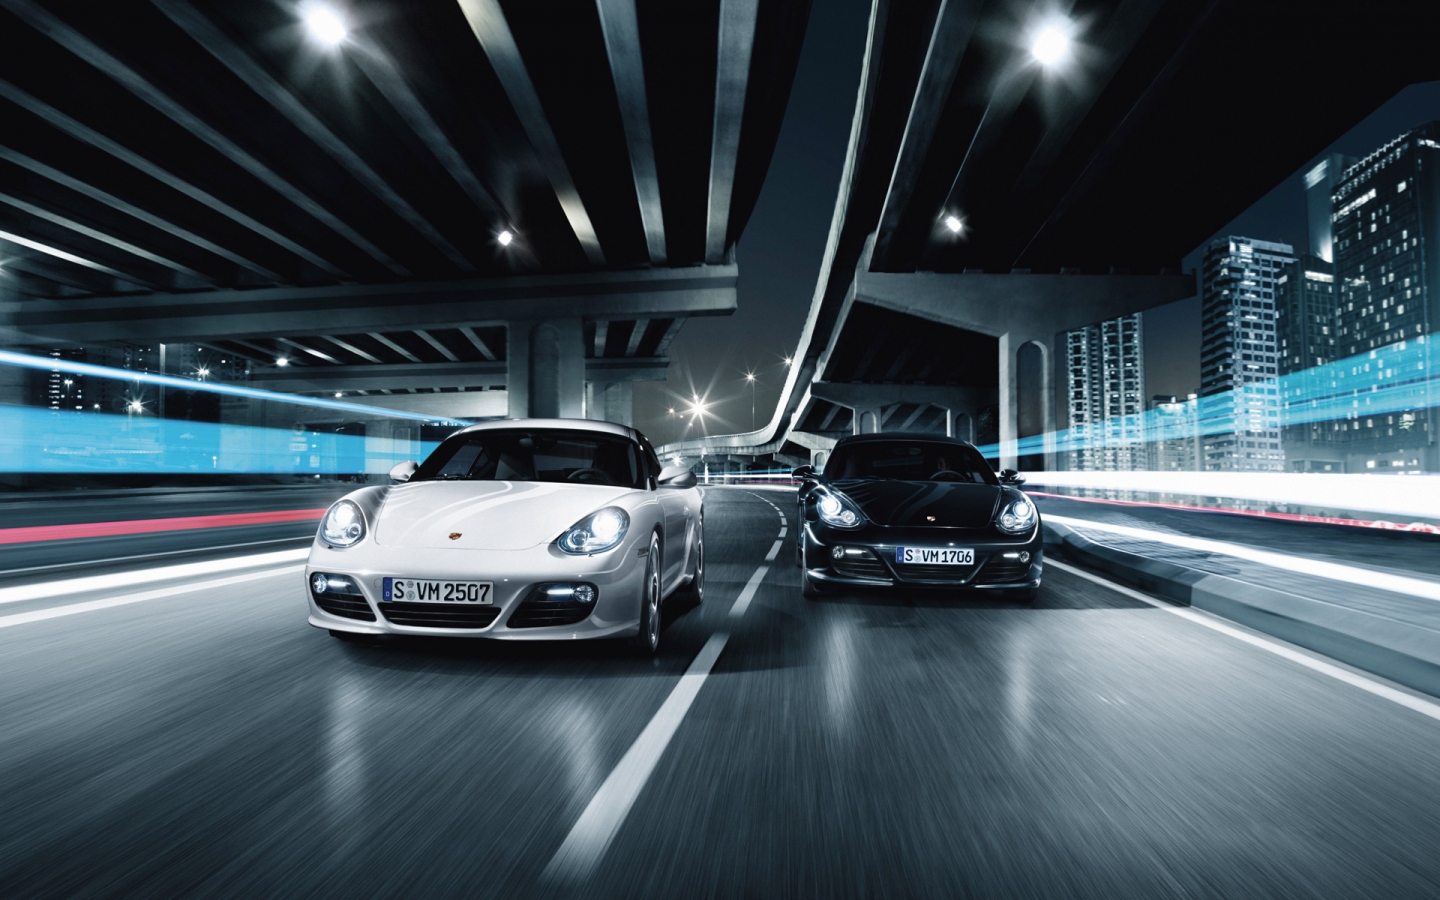 Porsche 911 GT2 Race for 1440 x 900 widescreen resolution